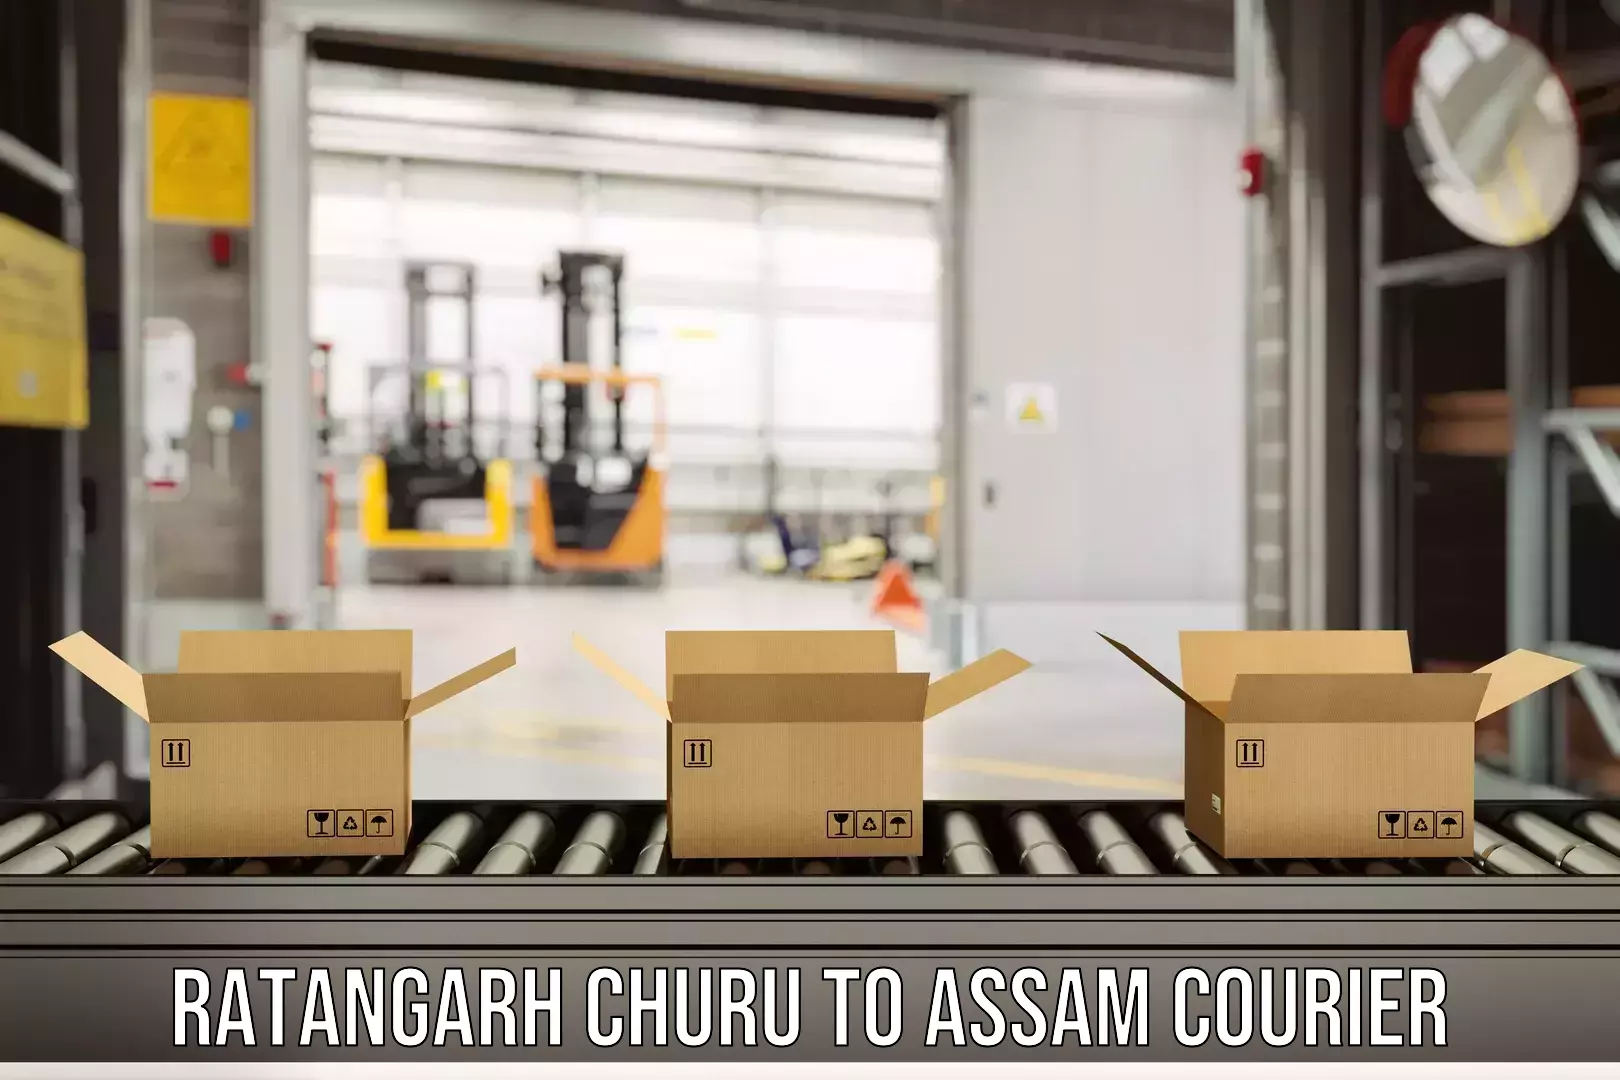 Efficient freight service Ratangarh Churu to Assam